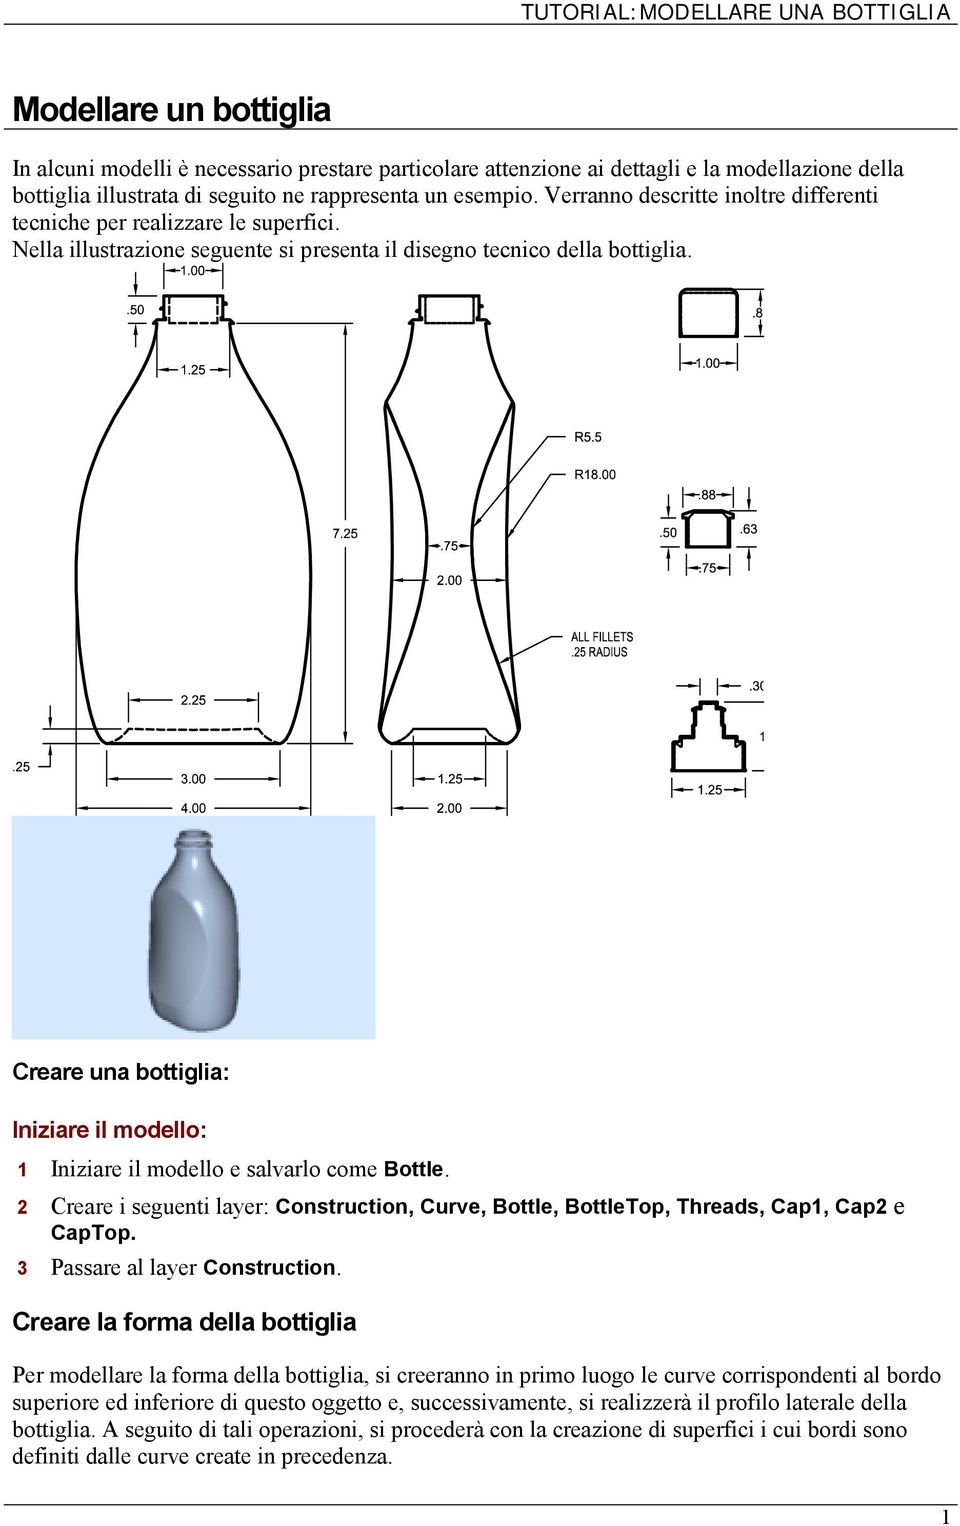 Creare una bottiglia: Iniziare il modello: 1 Iniziare il modello e salvarlo come Bottle. 2 Creare i seguenti layer: Construction, Curve, Bottle, BottleTop, Threads, Cap1, Cap2 e CapTop.